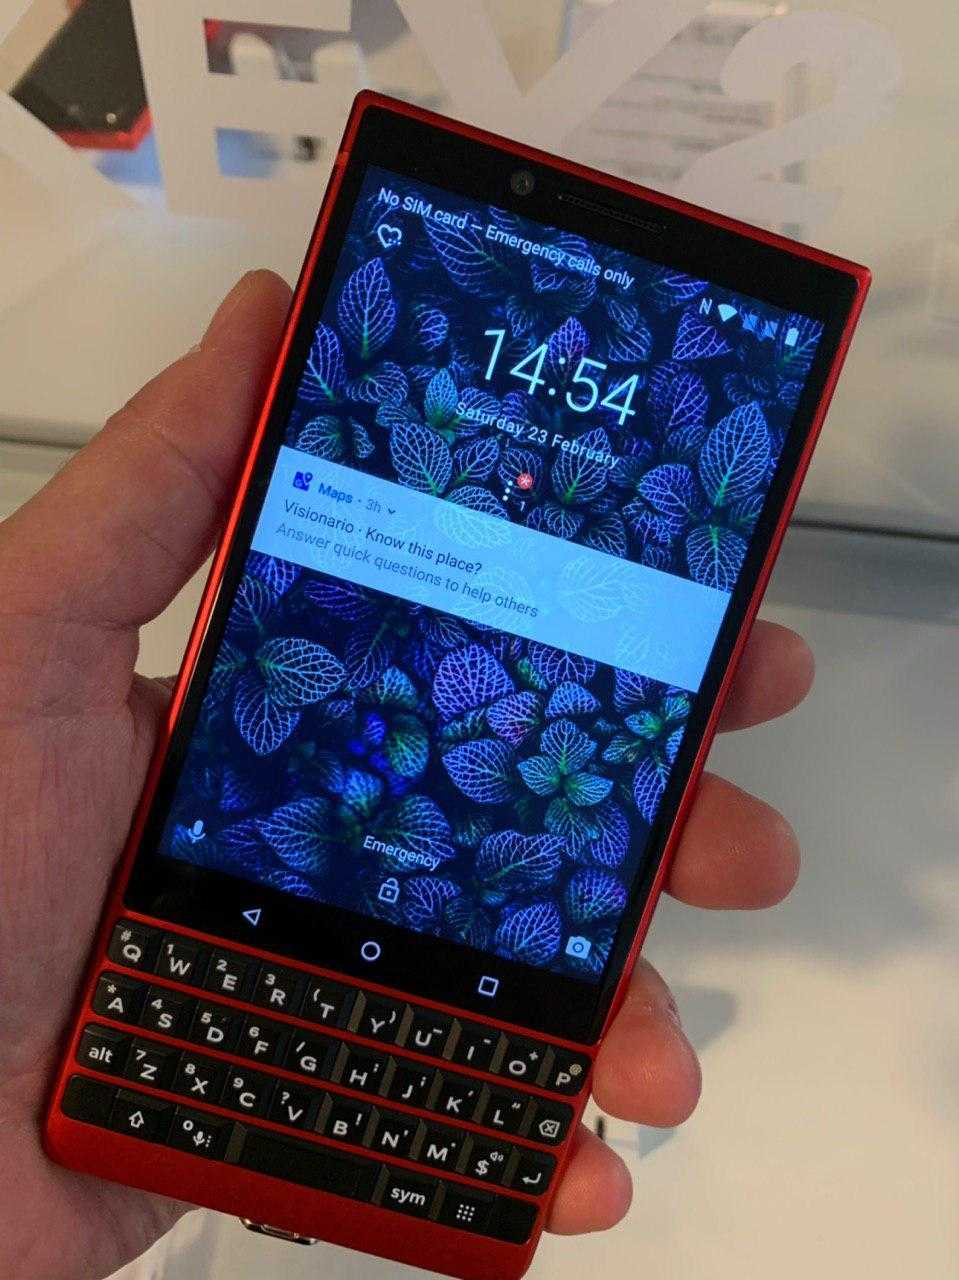 MWC 2019. BlackBerry KEY2 будет в красном цвете и с памятью 128 ГБ (photo 2019 02 23 19 54 17)